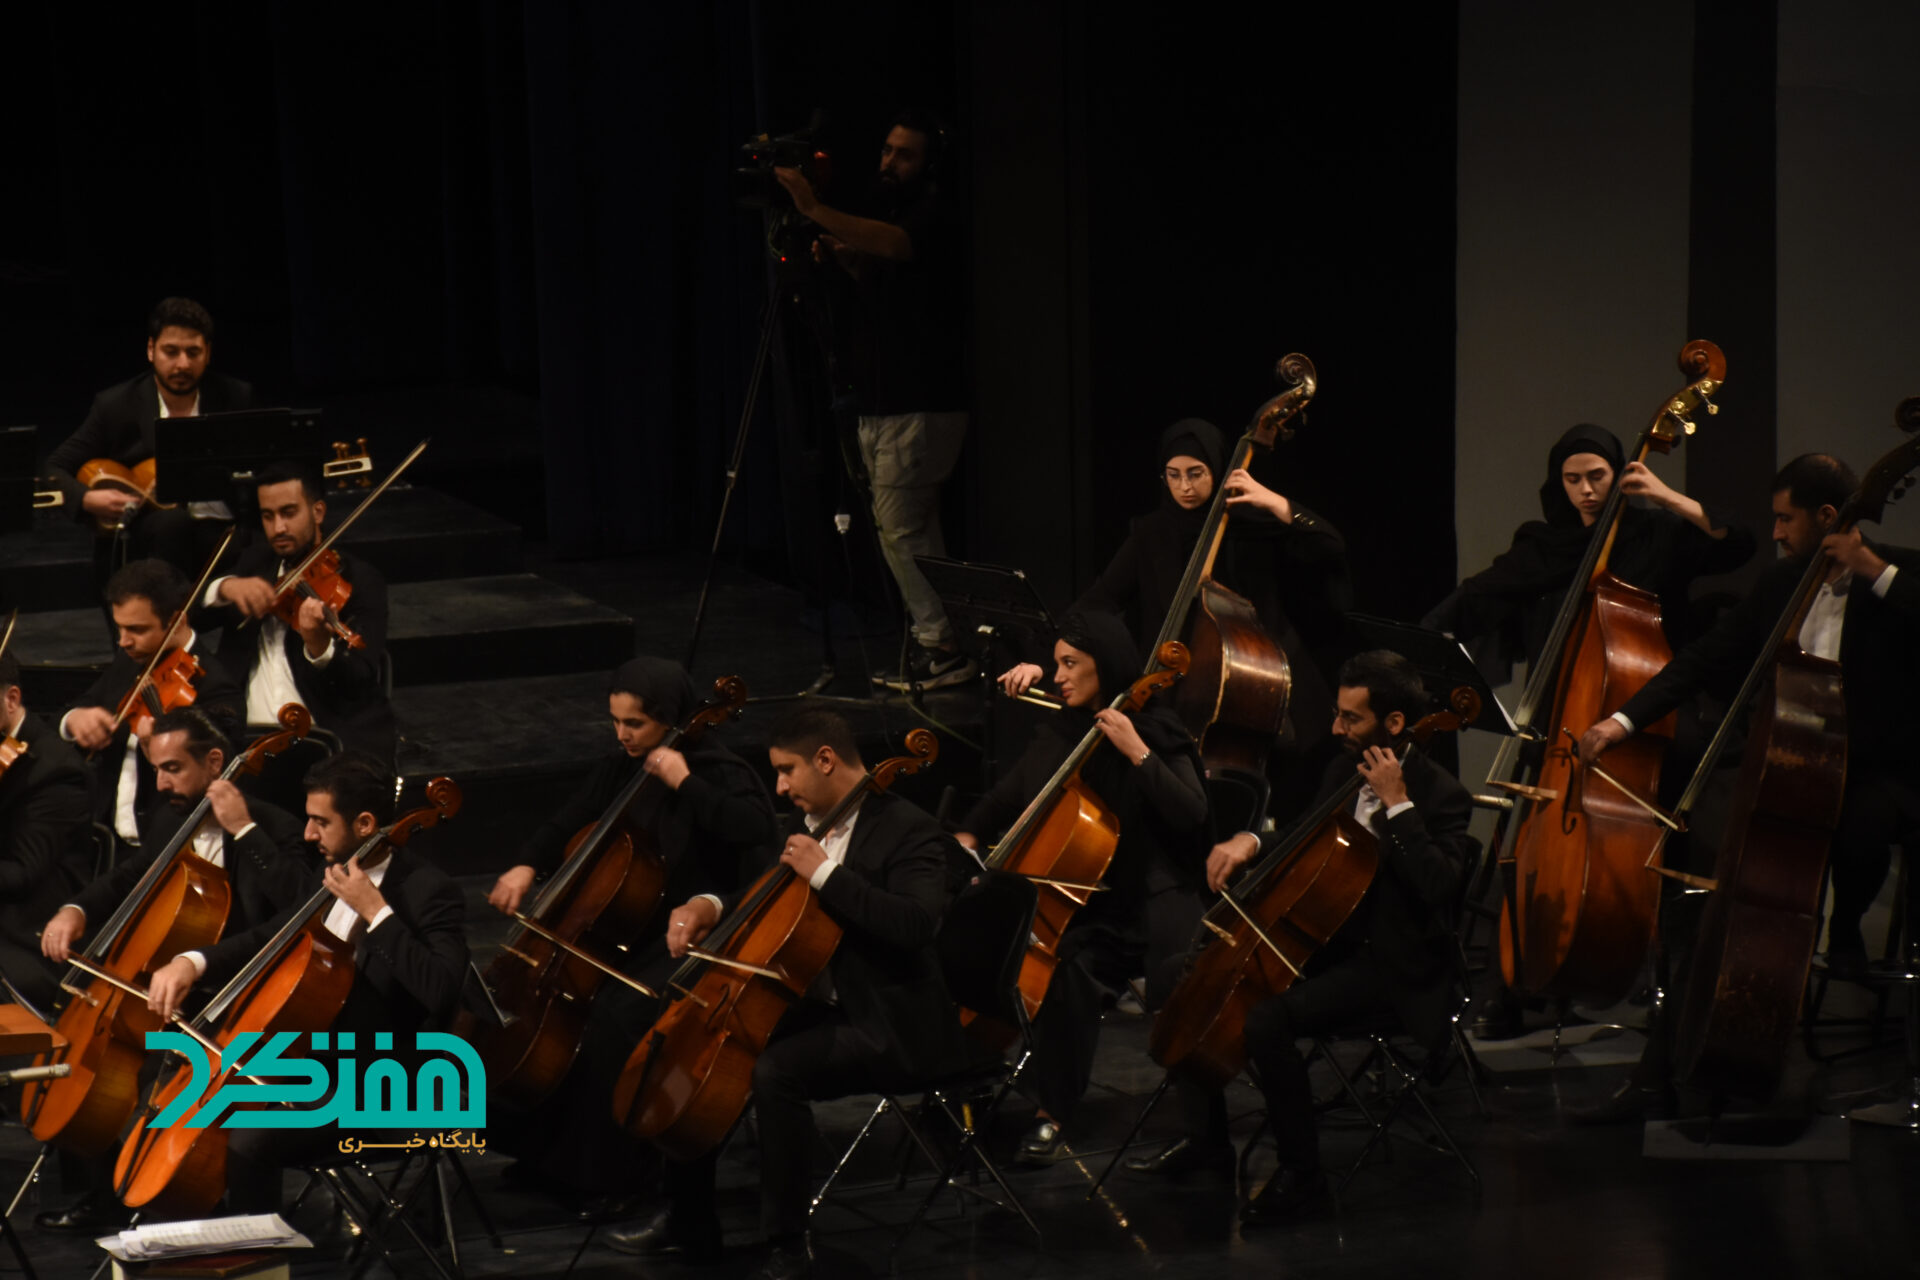  ارکستر سمفونیک ملی ایران